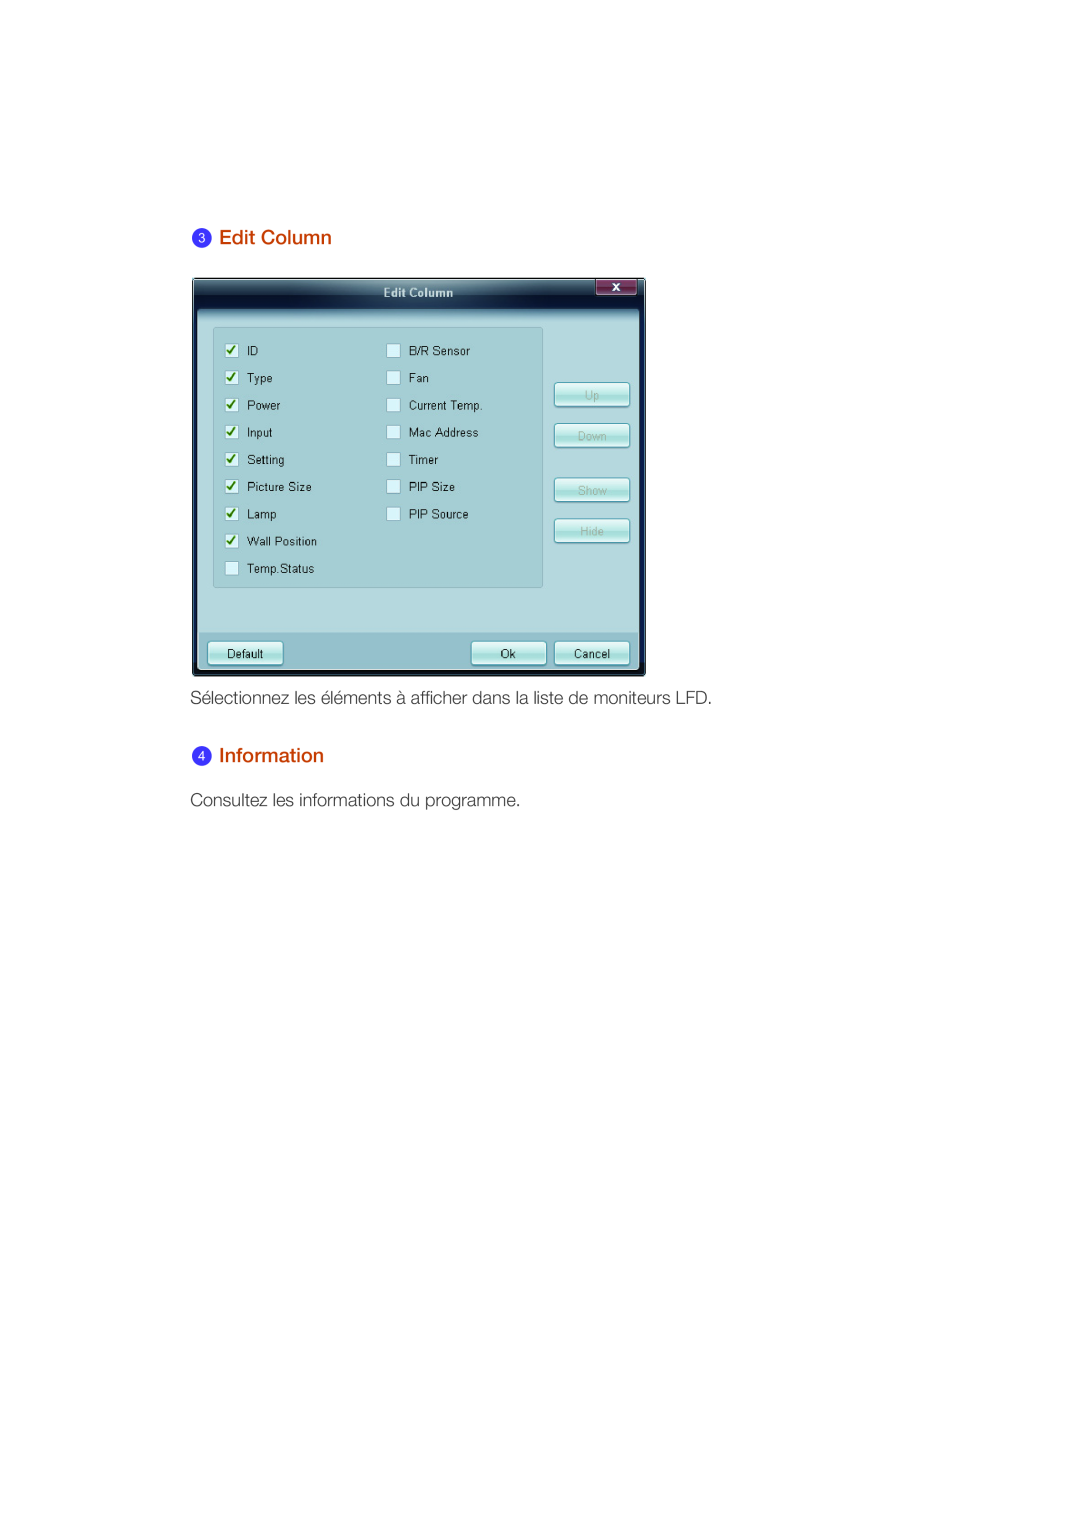 Samsung LH40CRPMBD/EN manual Edit Column, Information, Sélectionnez les éléments à afficher dans la liste de moniteurs LFD 